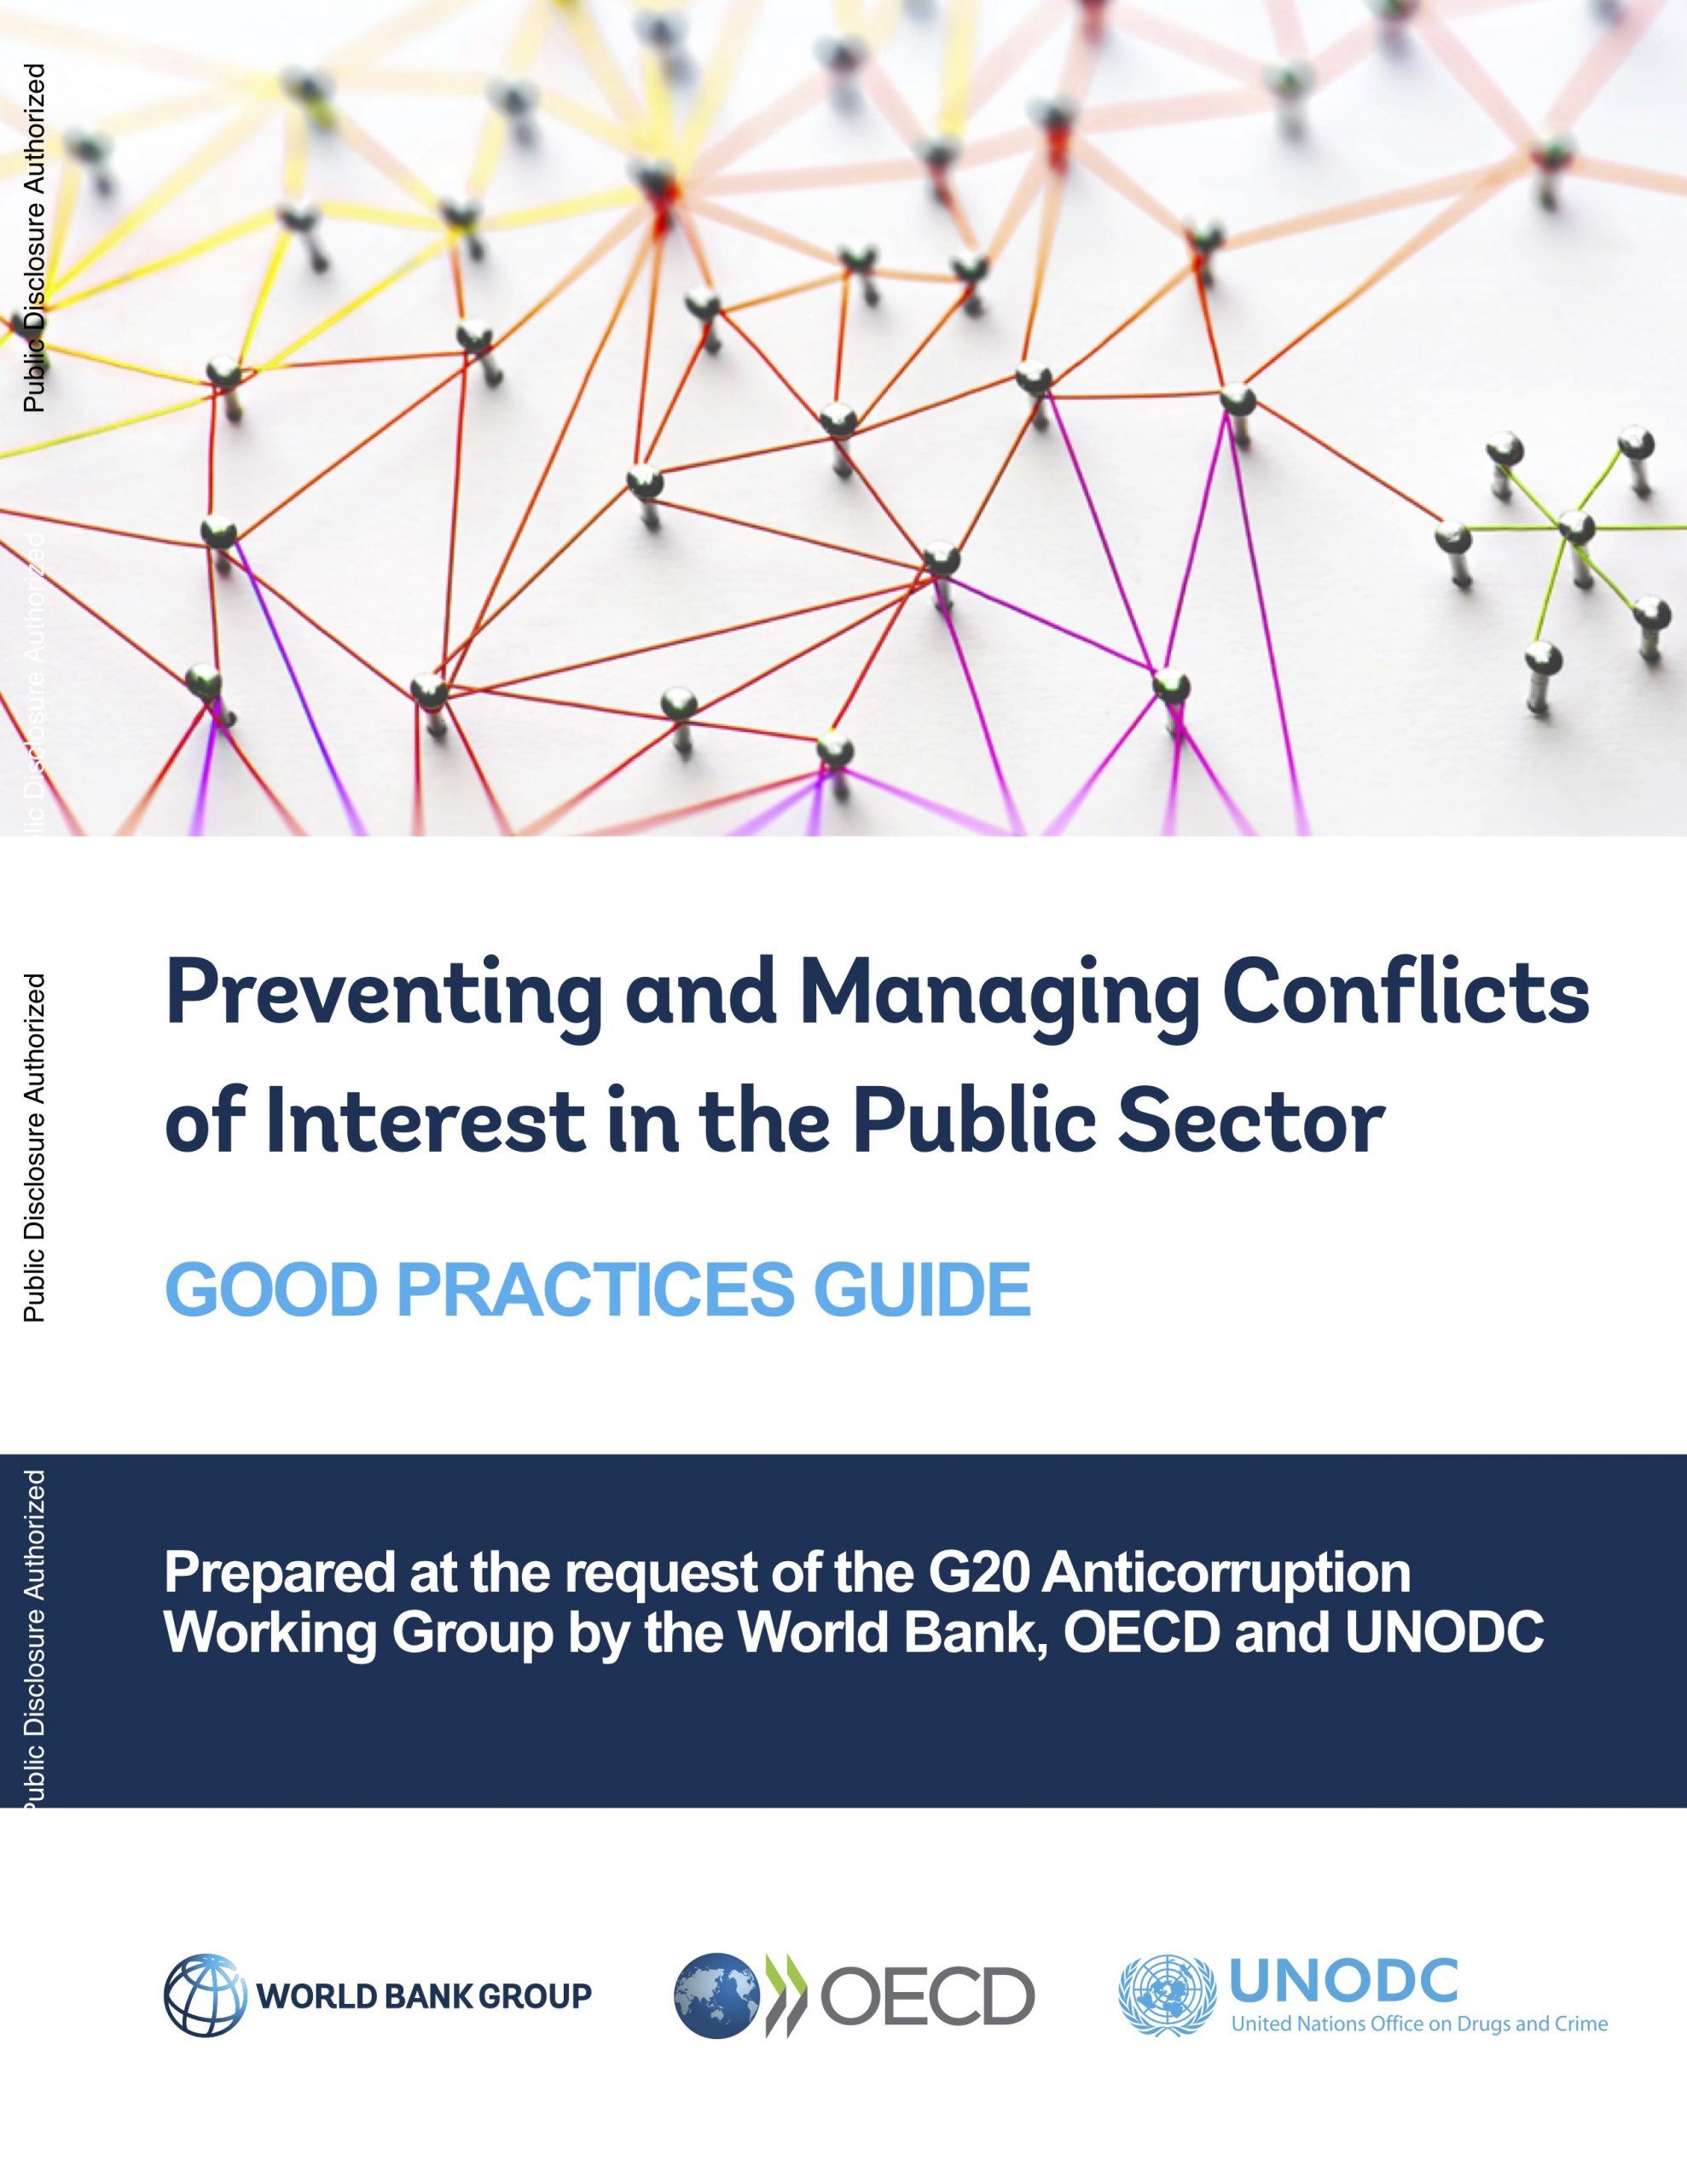 Manual de Boas Práticas – Conflitos de Interesse no Setor Público | BM/OCDE/UNODC, 2020